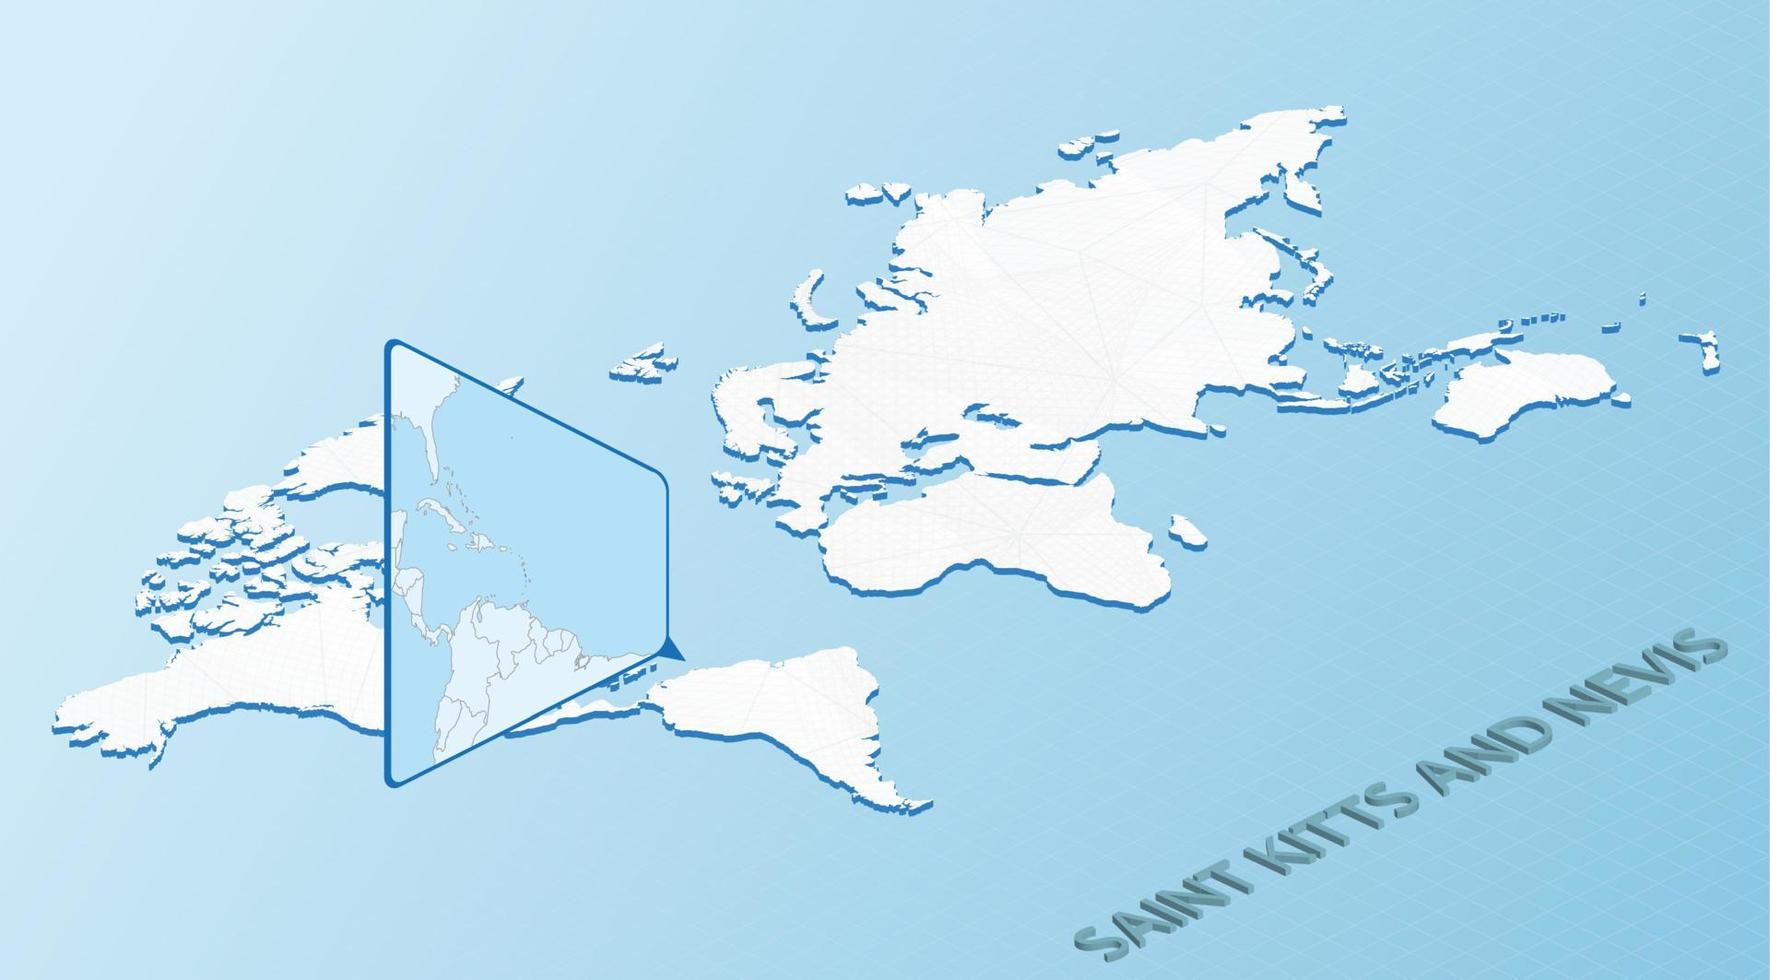 mondo carta geografica nel isometrico stile con dettagliato carta geografica di santo kitts e nevis. leggero blu santo kitts e nevis carta geografica con astratto mondo carta geografica. vettore